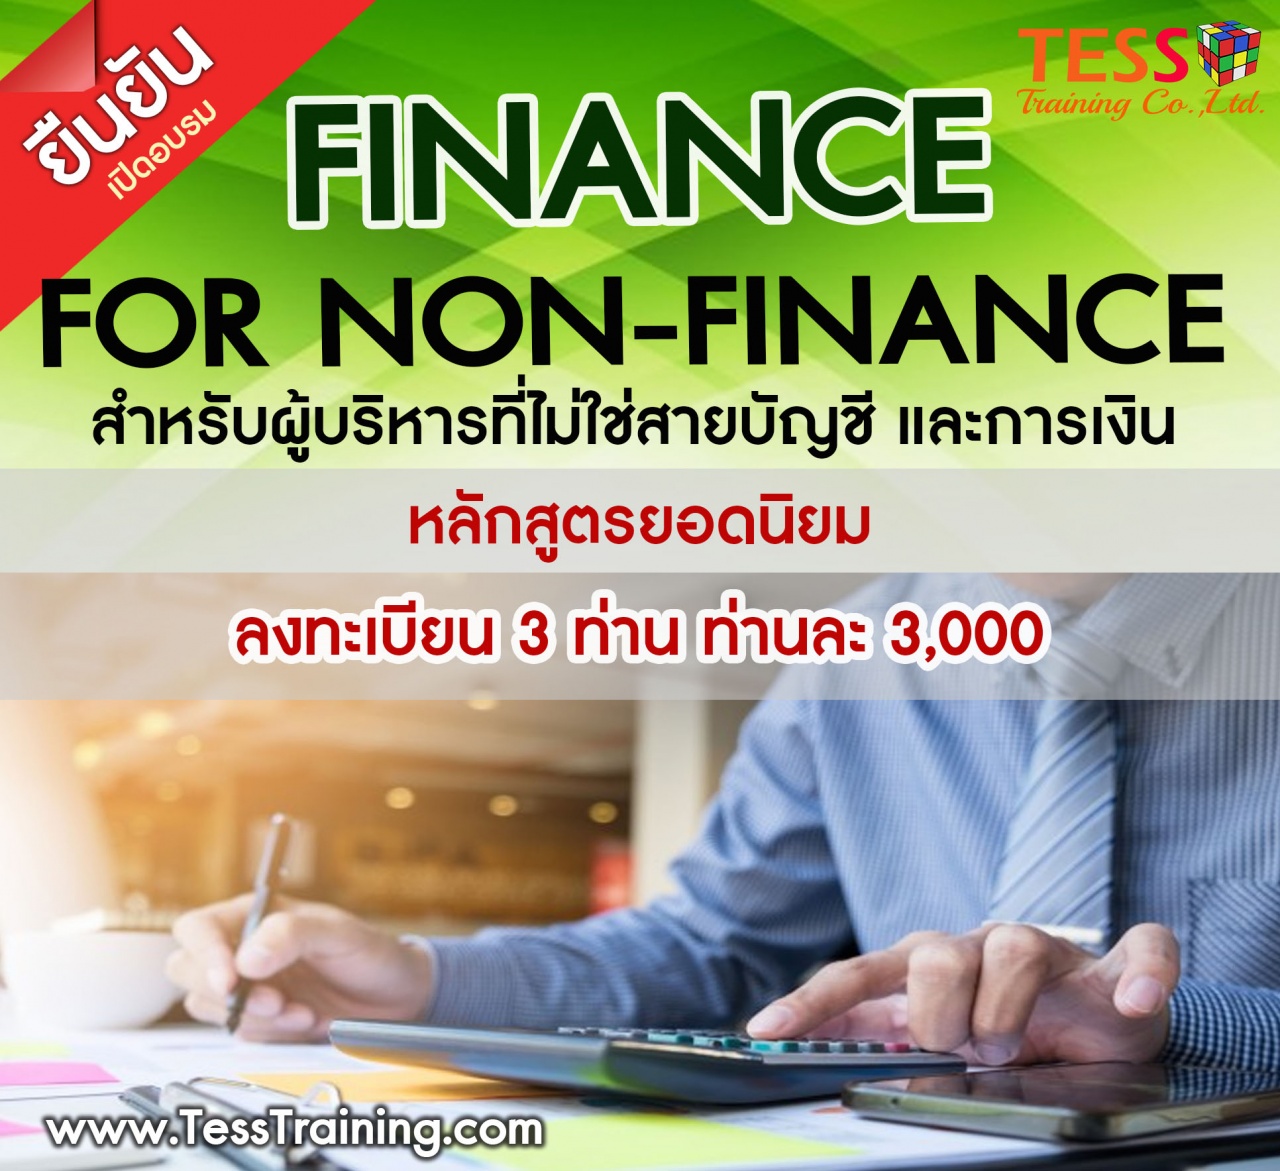 หลักสูตร Finance for Non-Finance สำหรับผู้บริหารที่ไม่ใช่สายบัญชี และการเงิน 